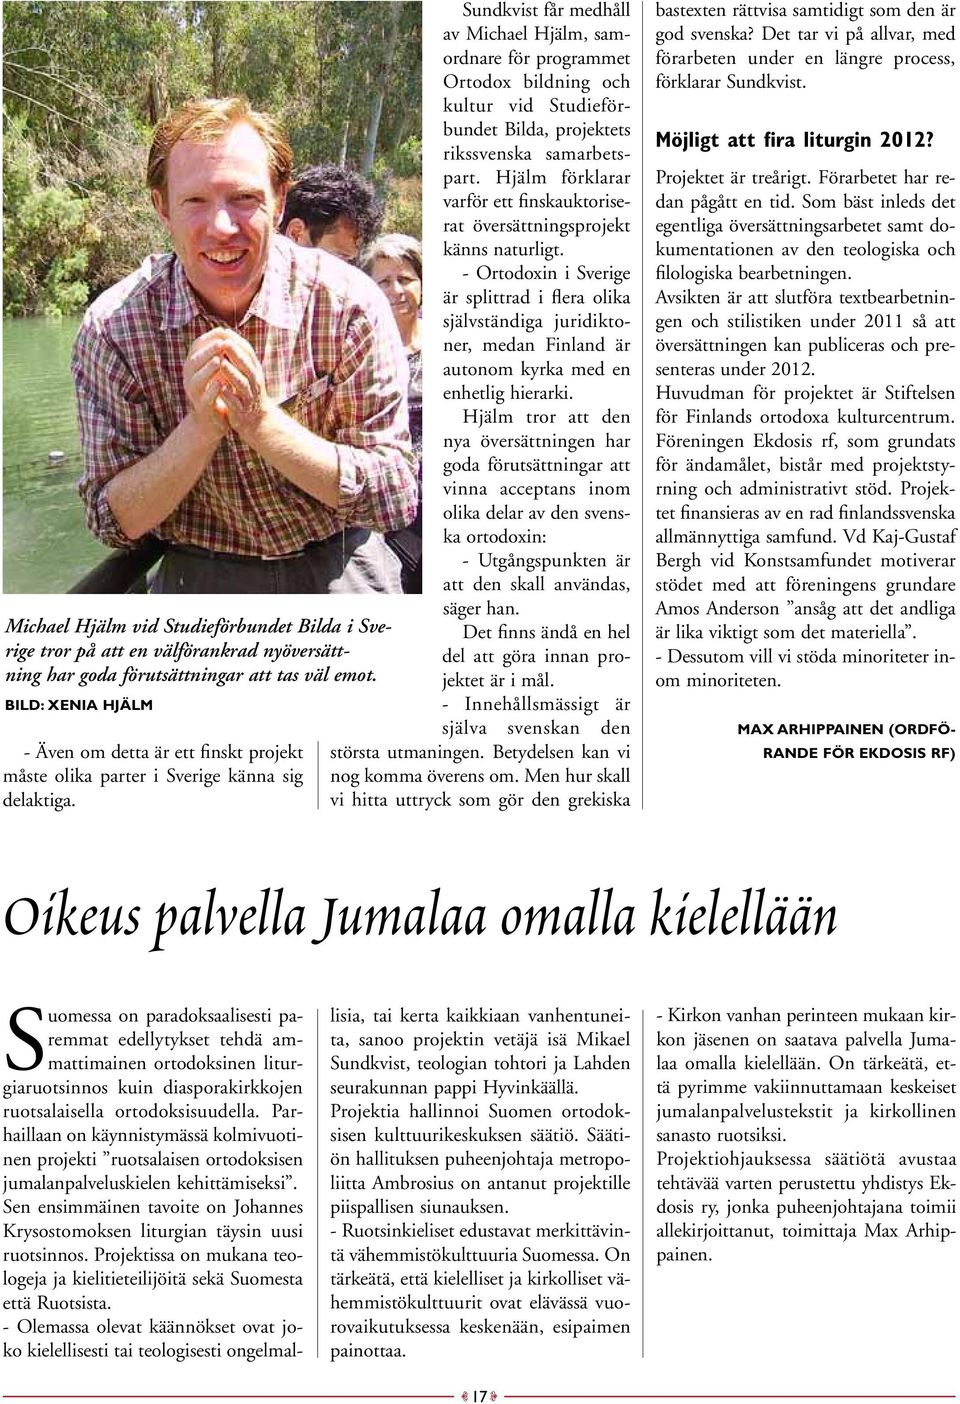 Sundkvist får medhåll av Michael Hjälm, samordnare för programmet Ortodox bildning och kultur vid Studieförbundet Bilda, projektets rikssvenska samarbetspart.